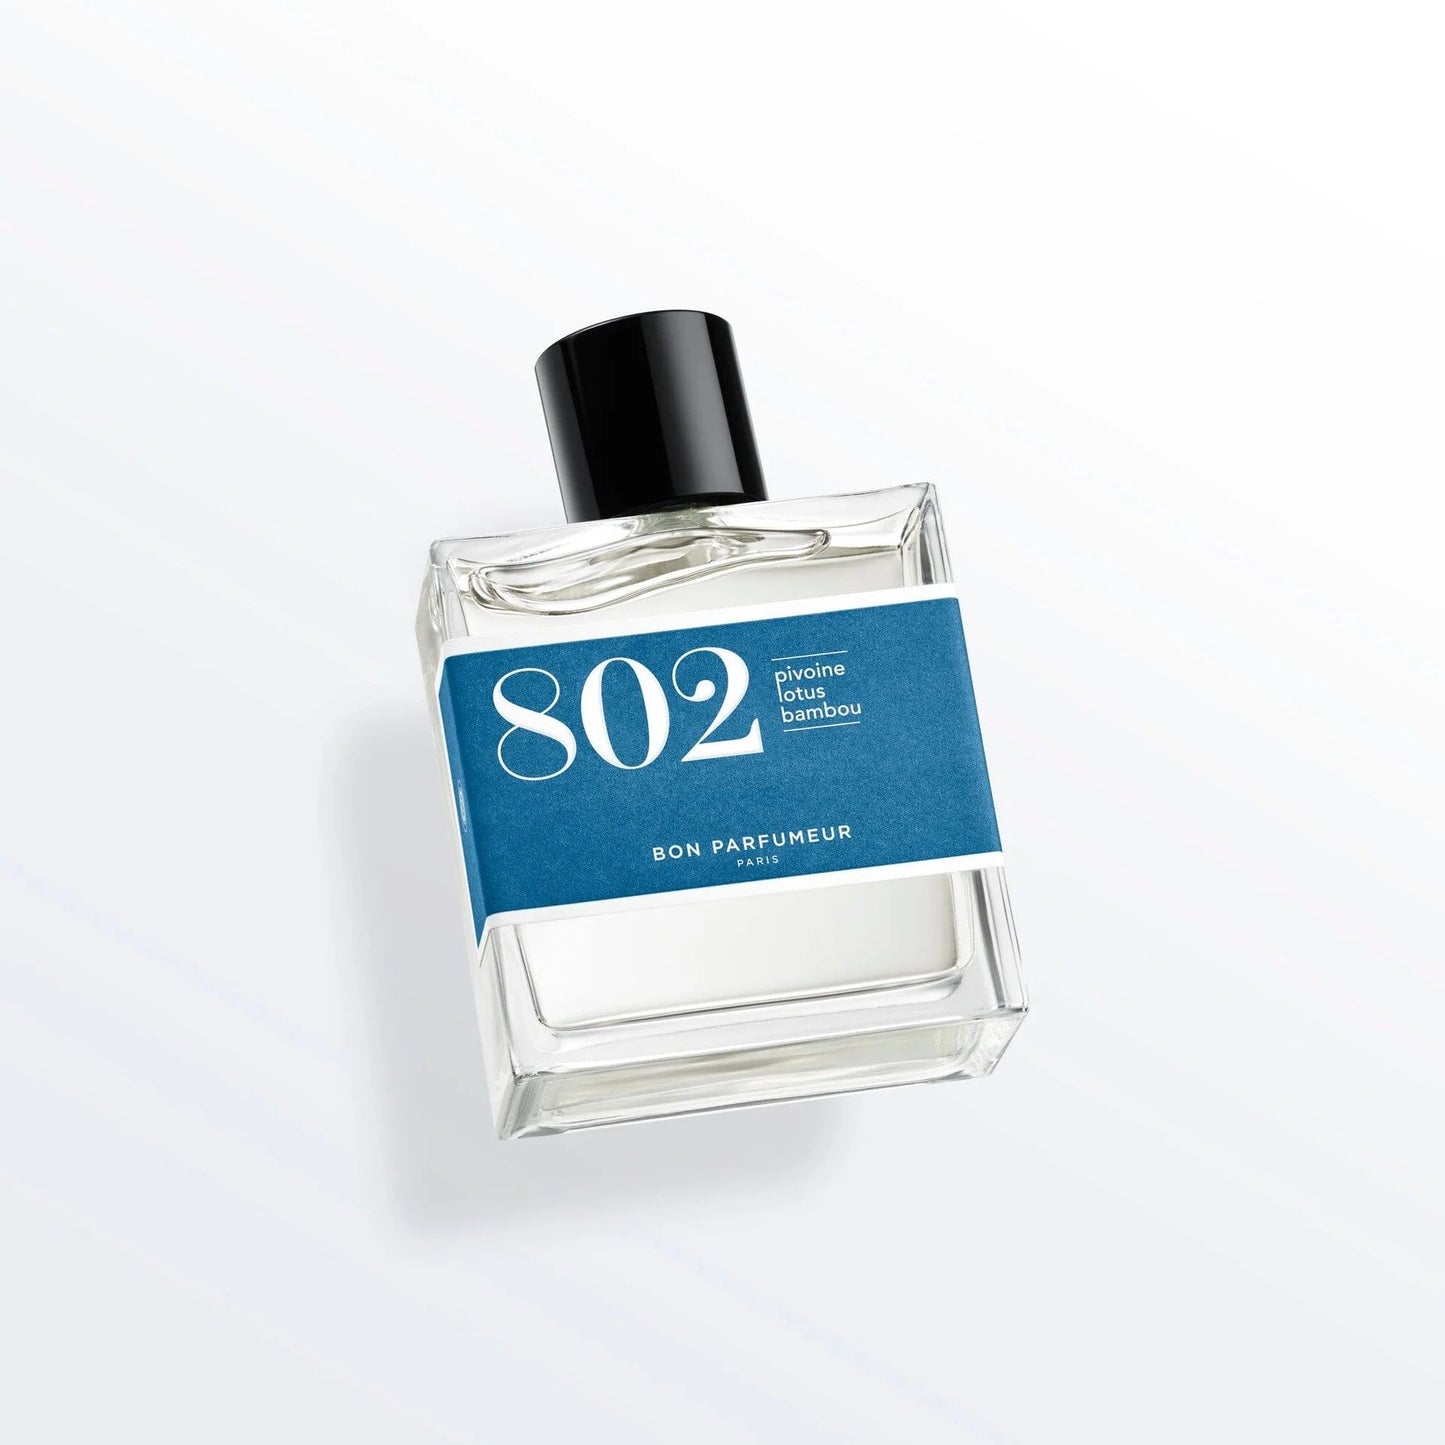 Bon Parfumeur - 802 Pivoine, lotus, bambou 30ML